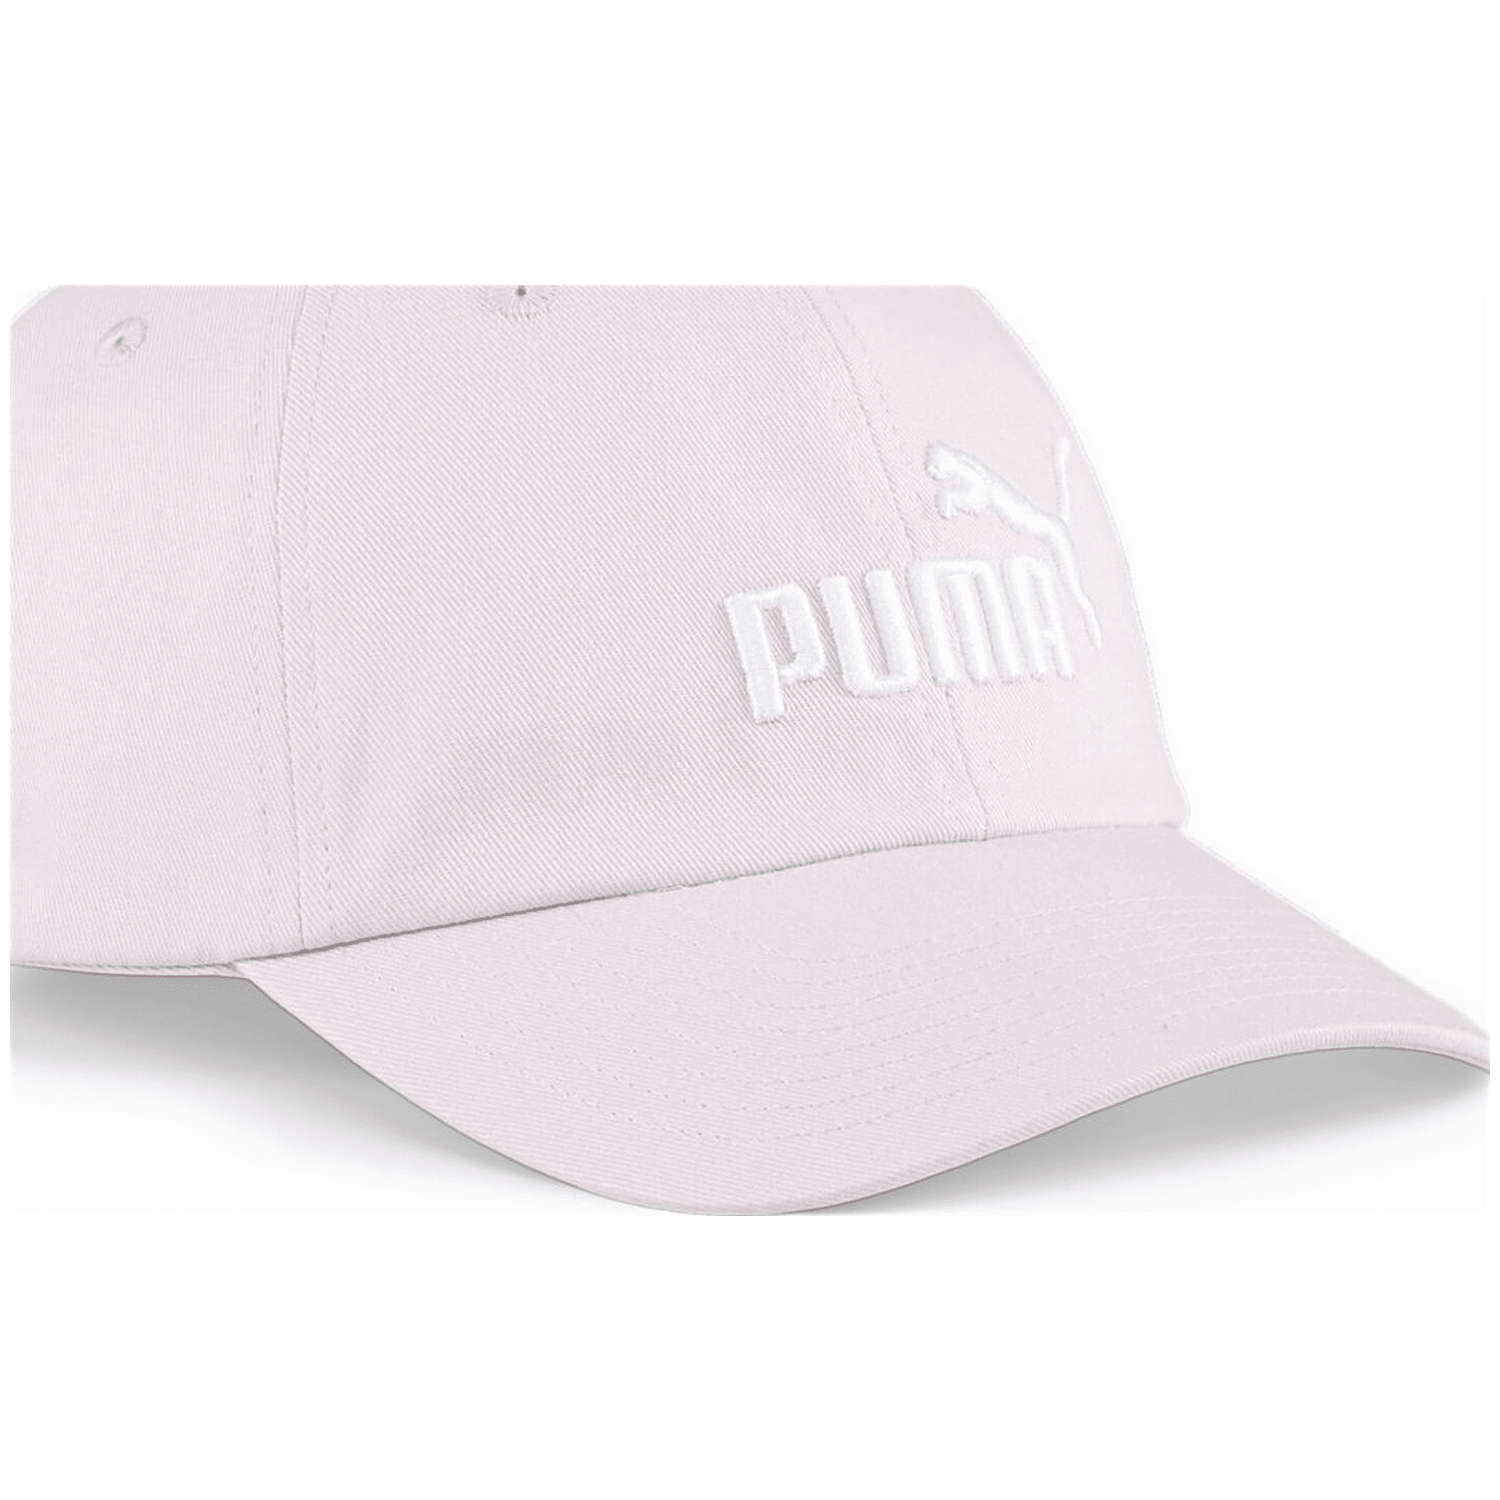 Puma ESS No.1 Cap